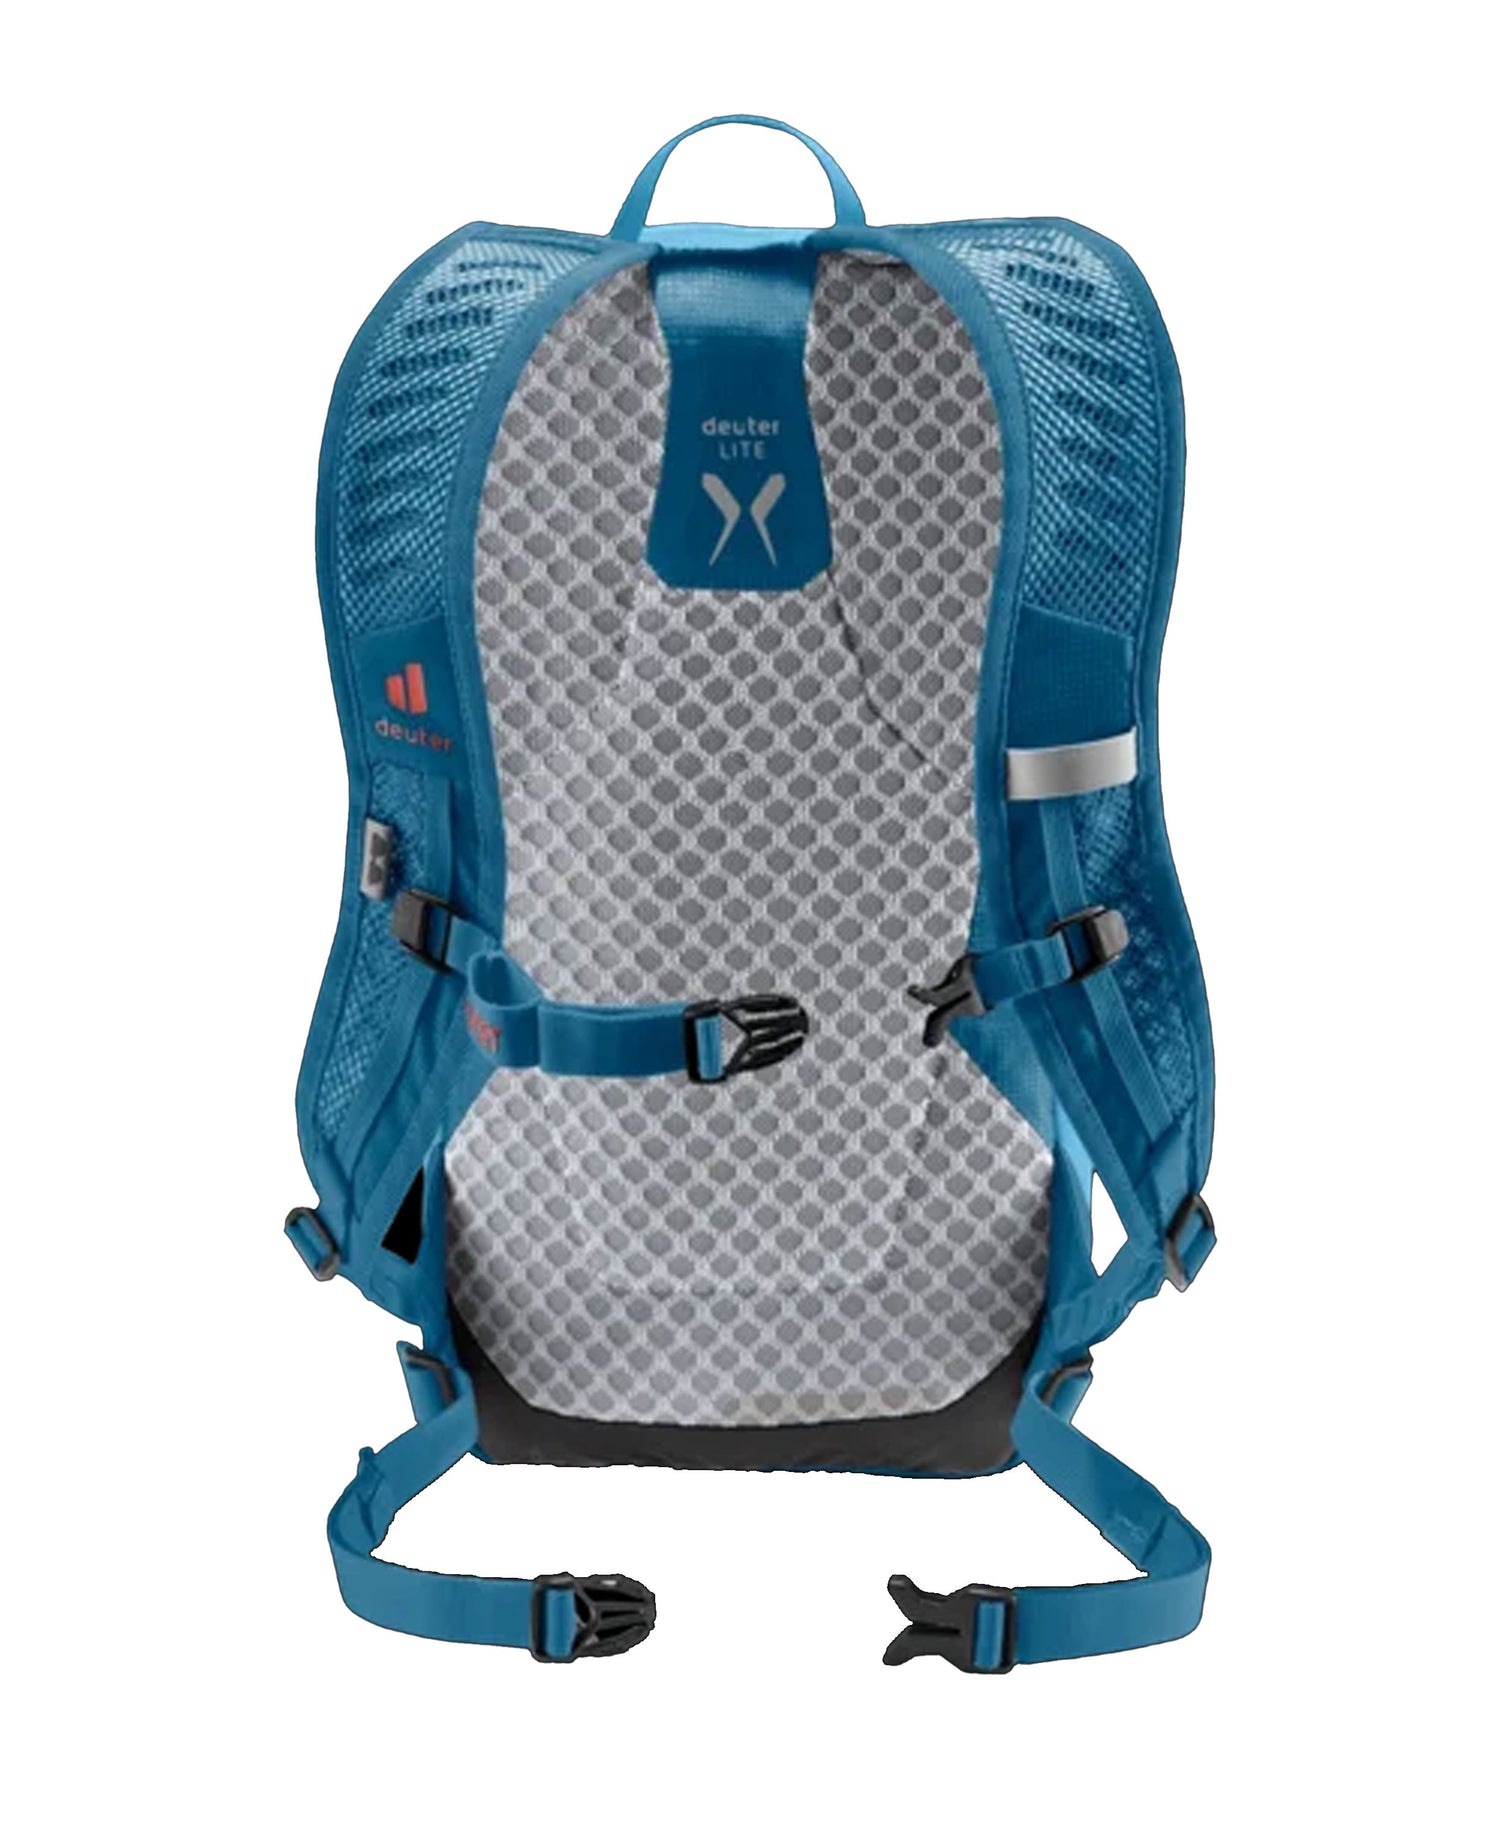 Speed Lite 13 Backpack - Azure/Reef